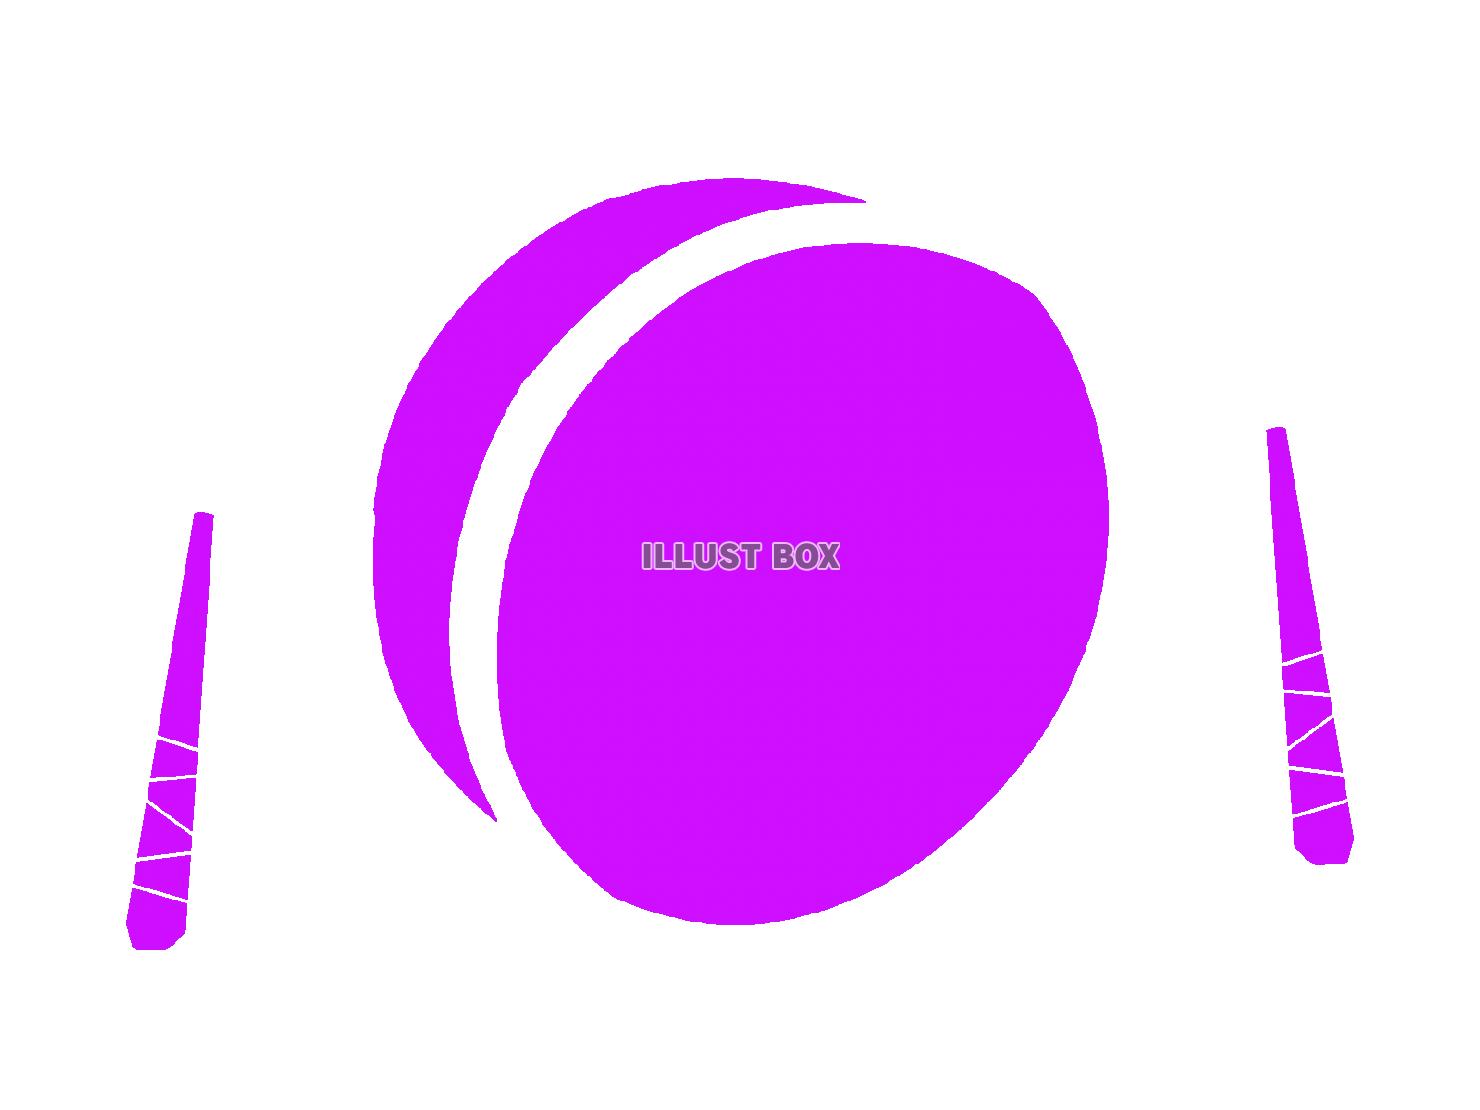 紫色の太鼓のシルエットアイコン